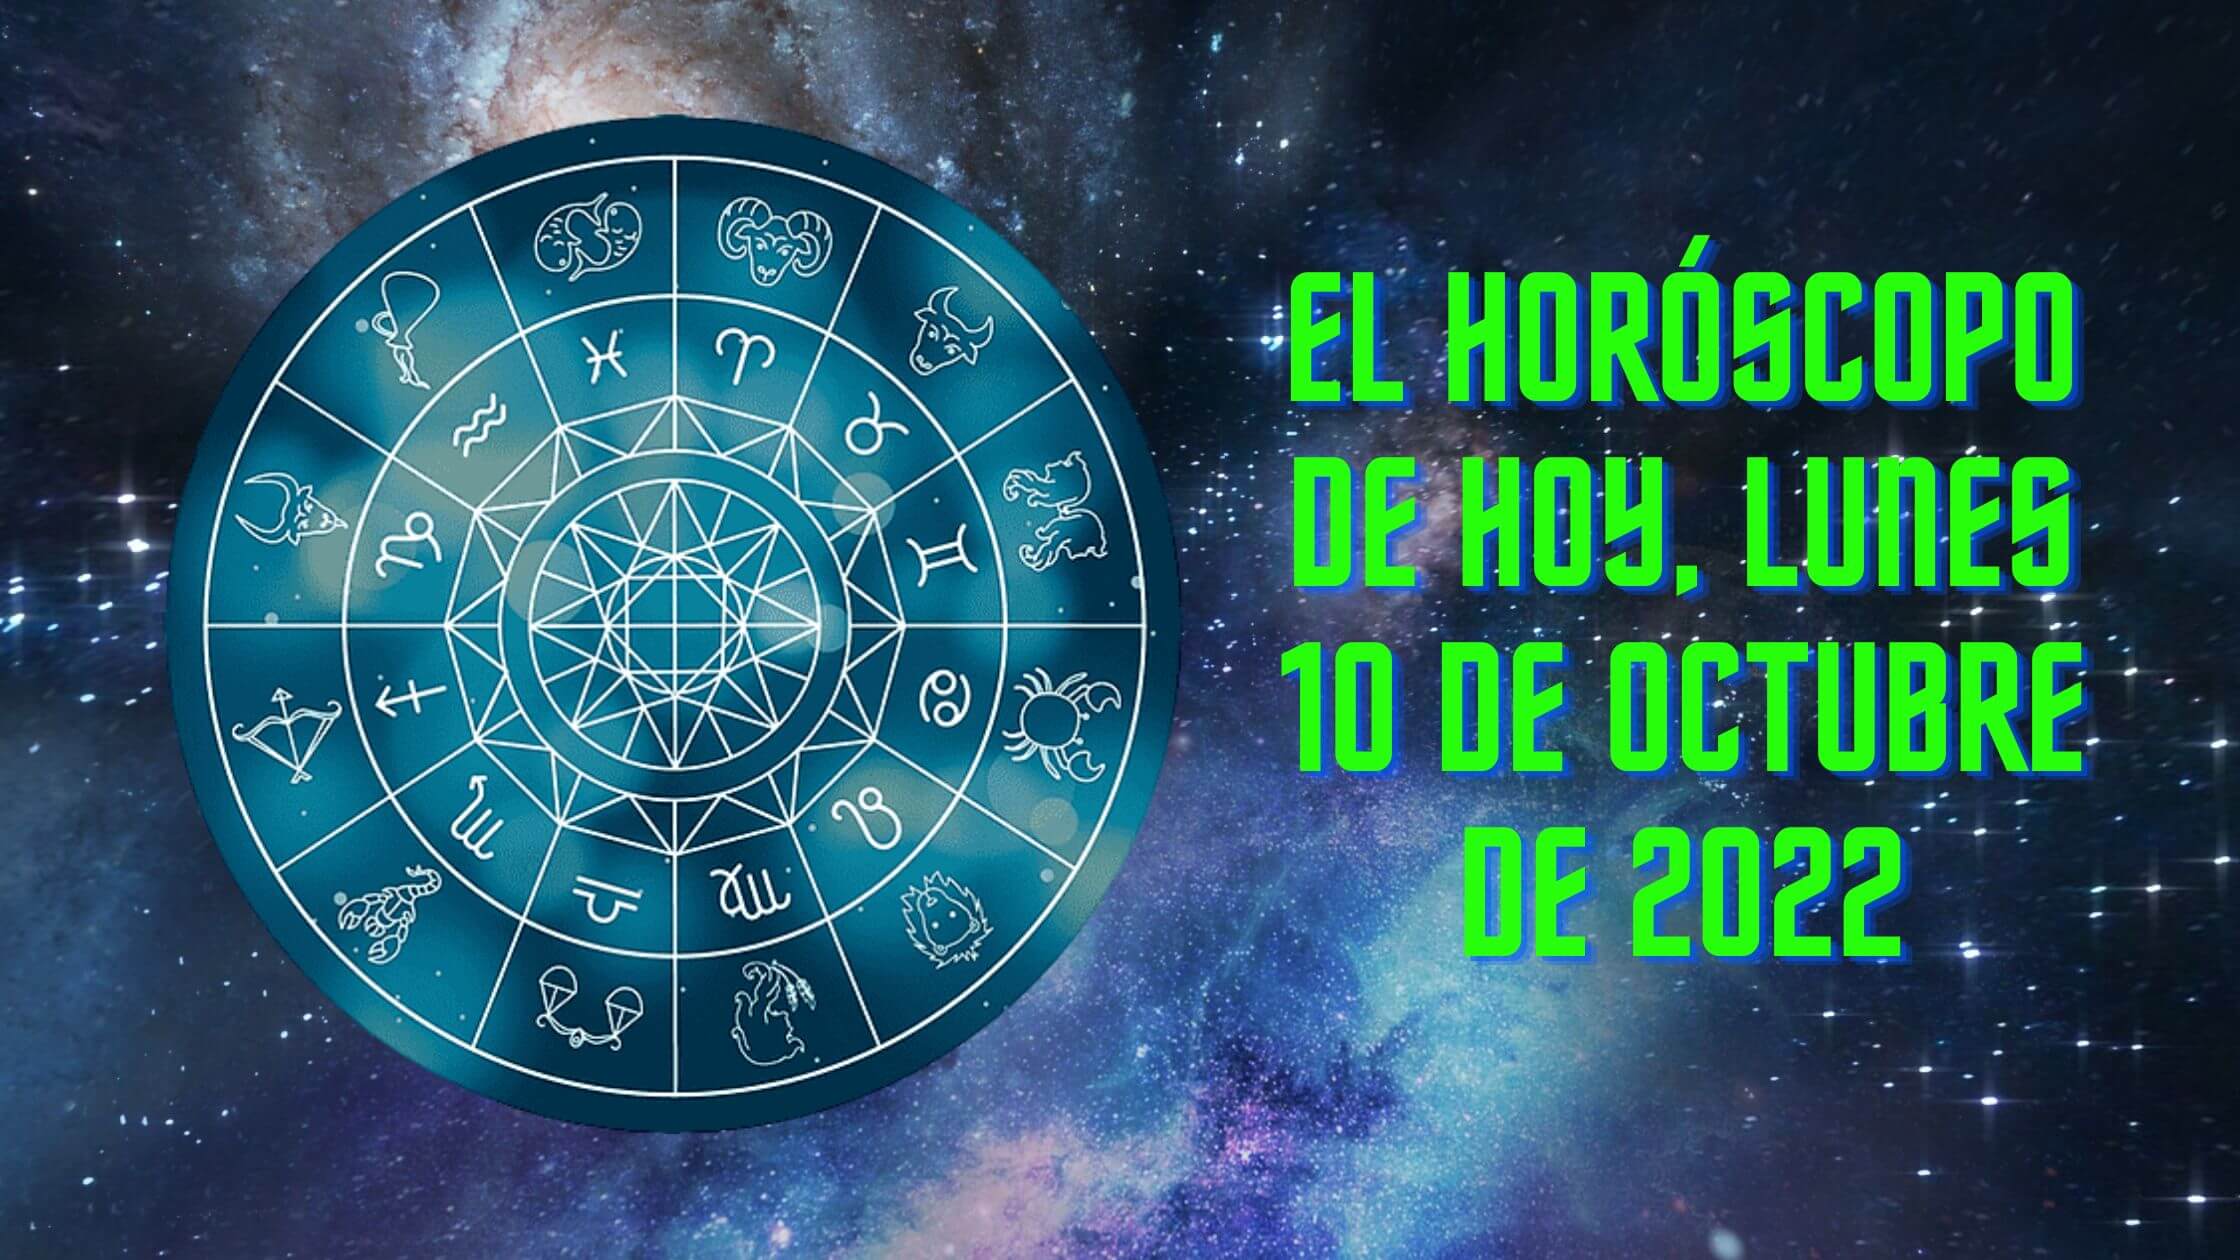 El horoscopo de hoy lunes 10 de octubre de 2022 comprueba tu signo del zodiaco 2